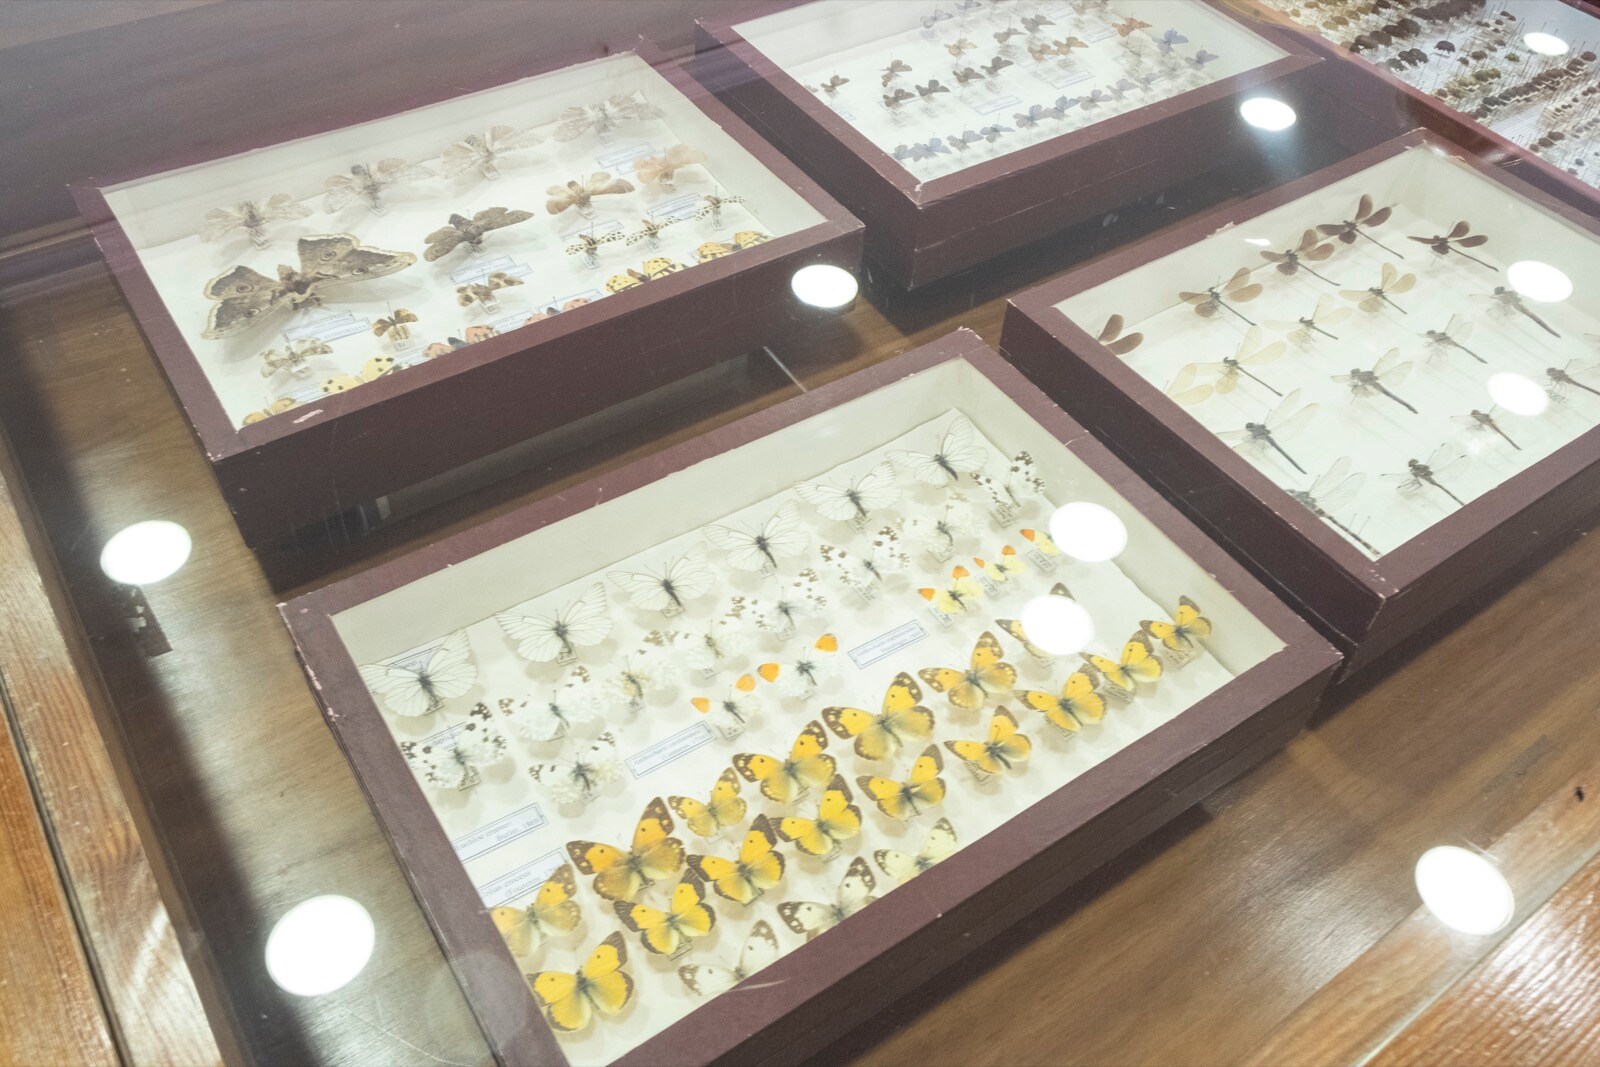 La UGR cuenta con una colección en el departamento de Zoología de más 200.000 ejemplares y 10.000 especies